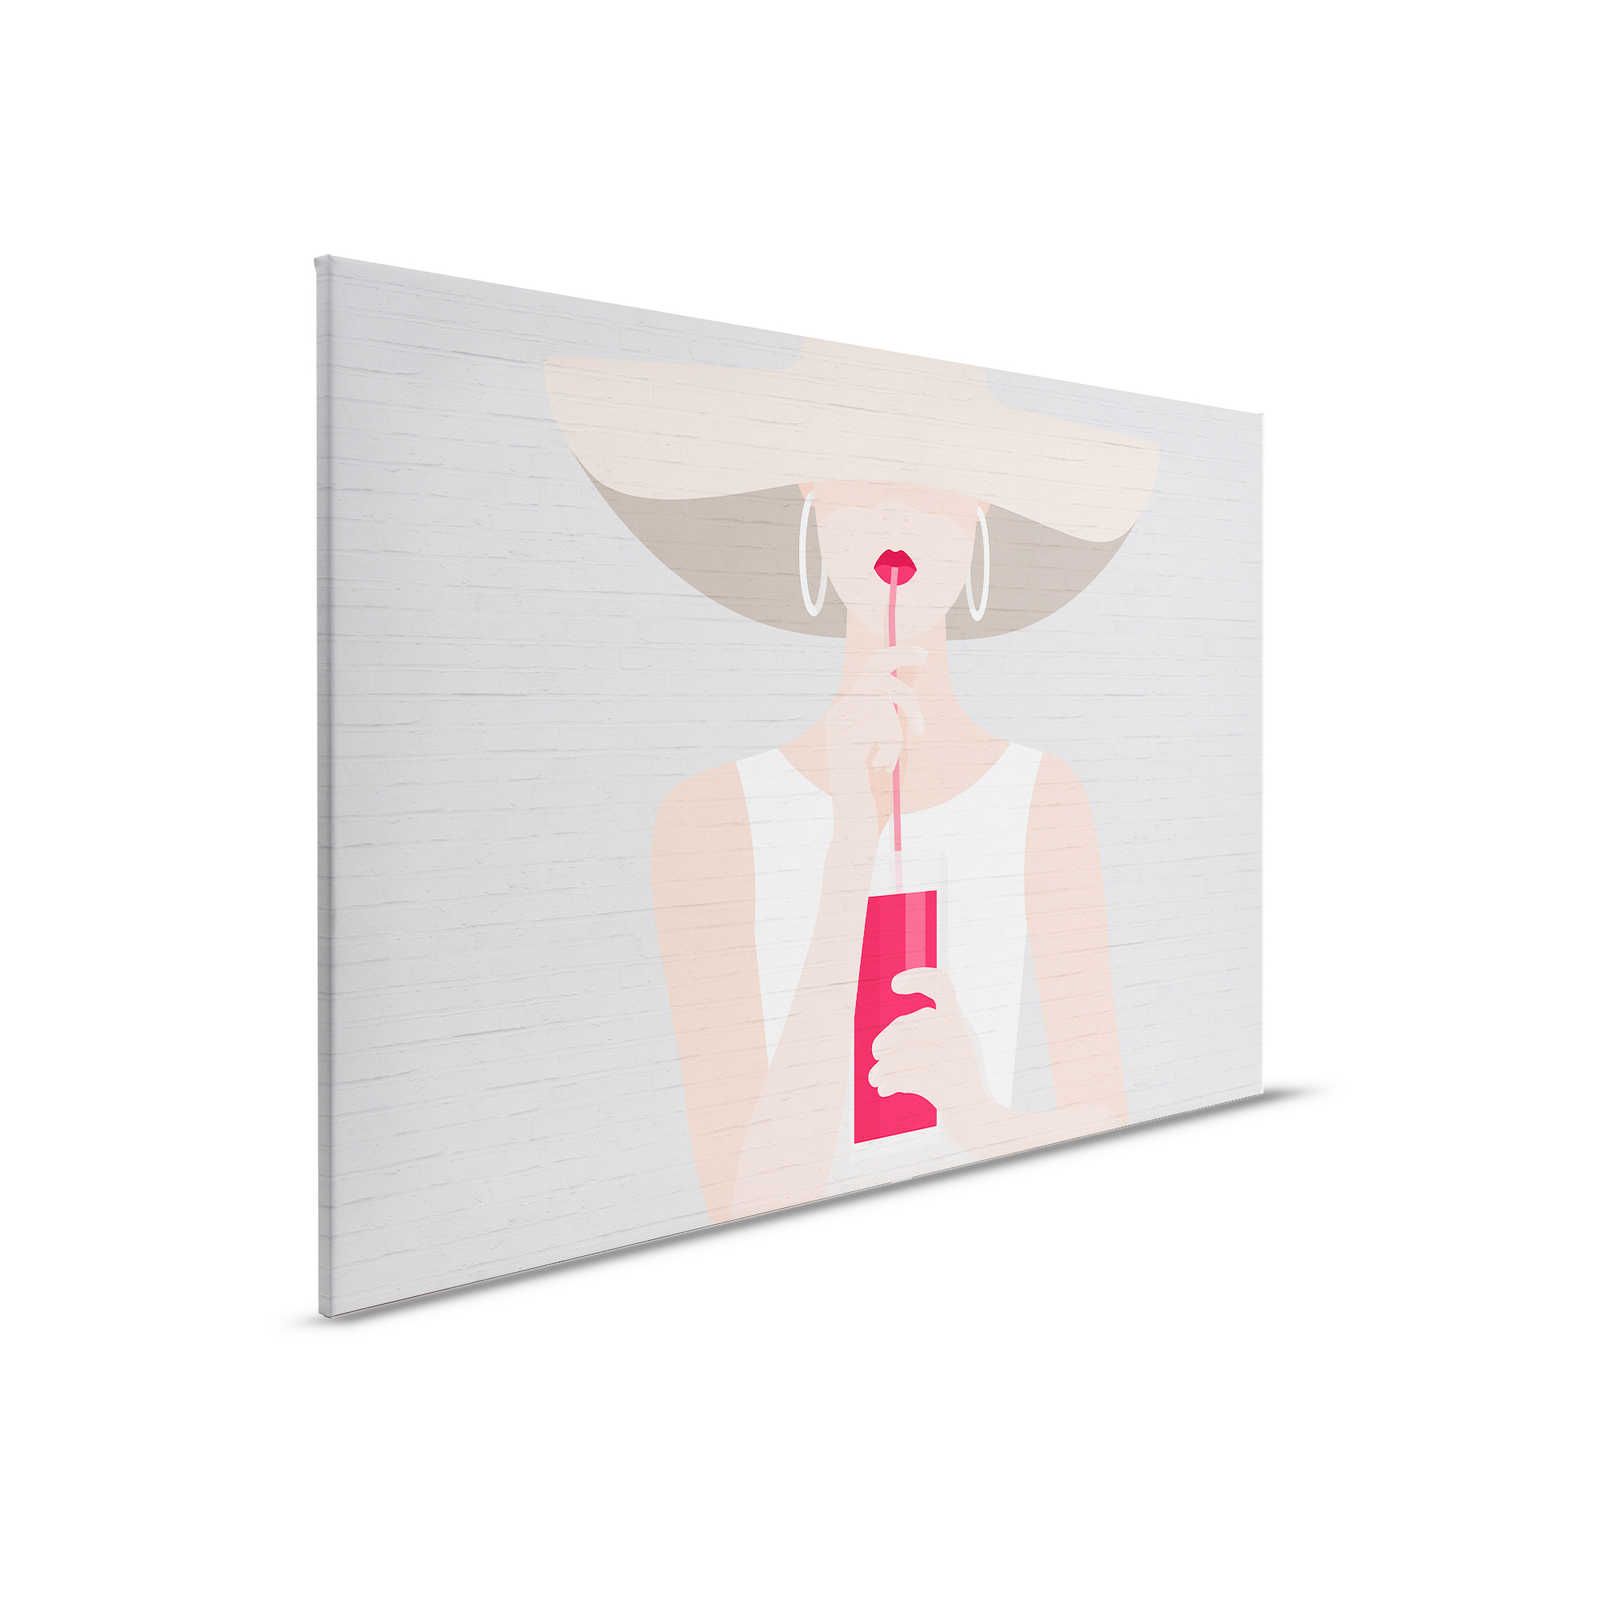         Steinoptik Leinwandbild mit Frauen Motiv im Sommer Look – 0,90 m x 0,60 m
    